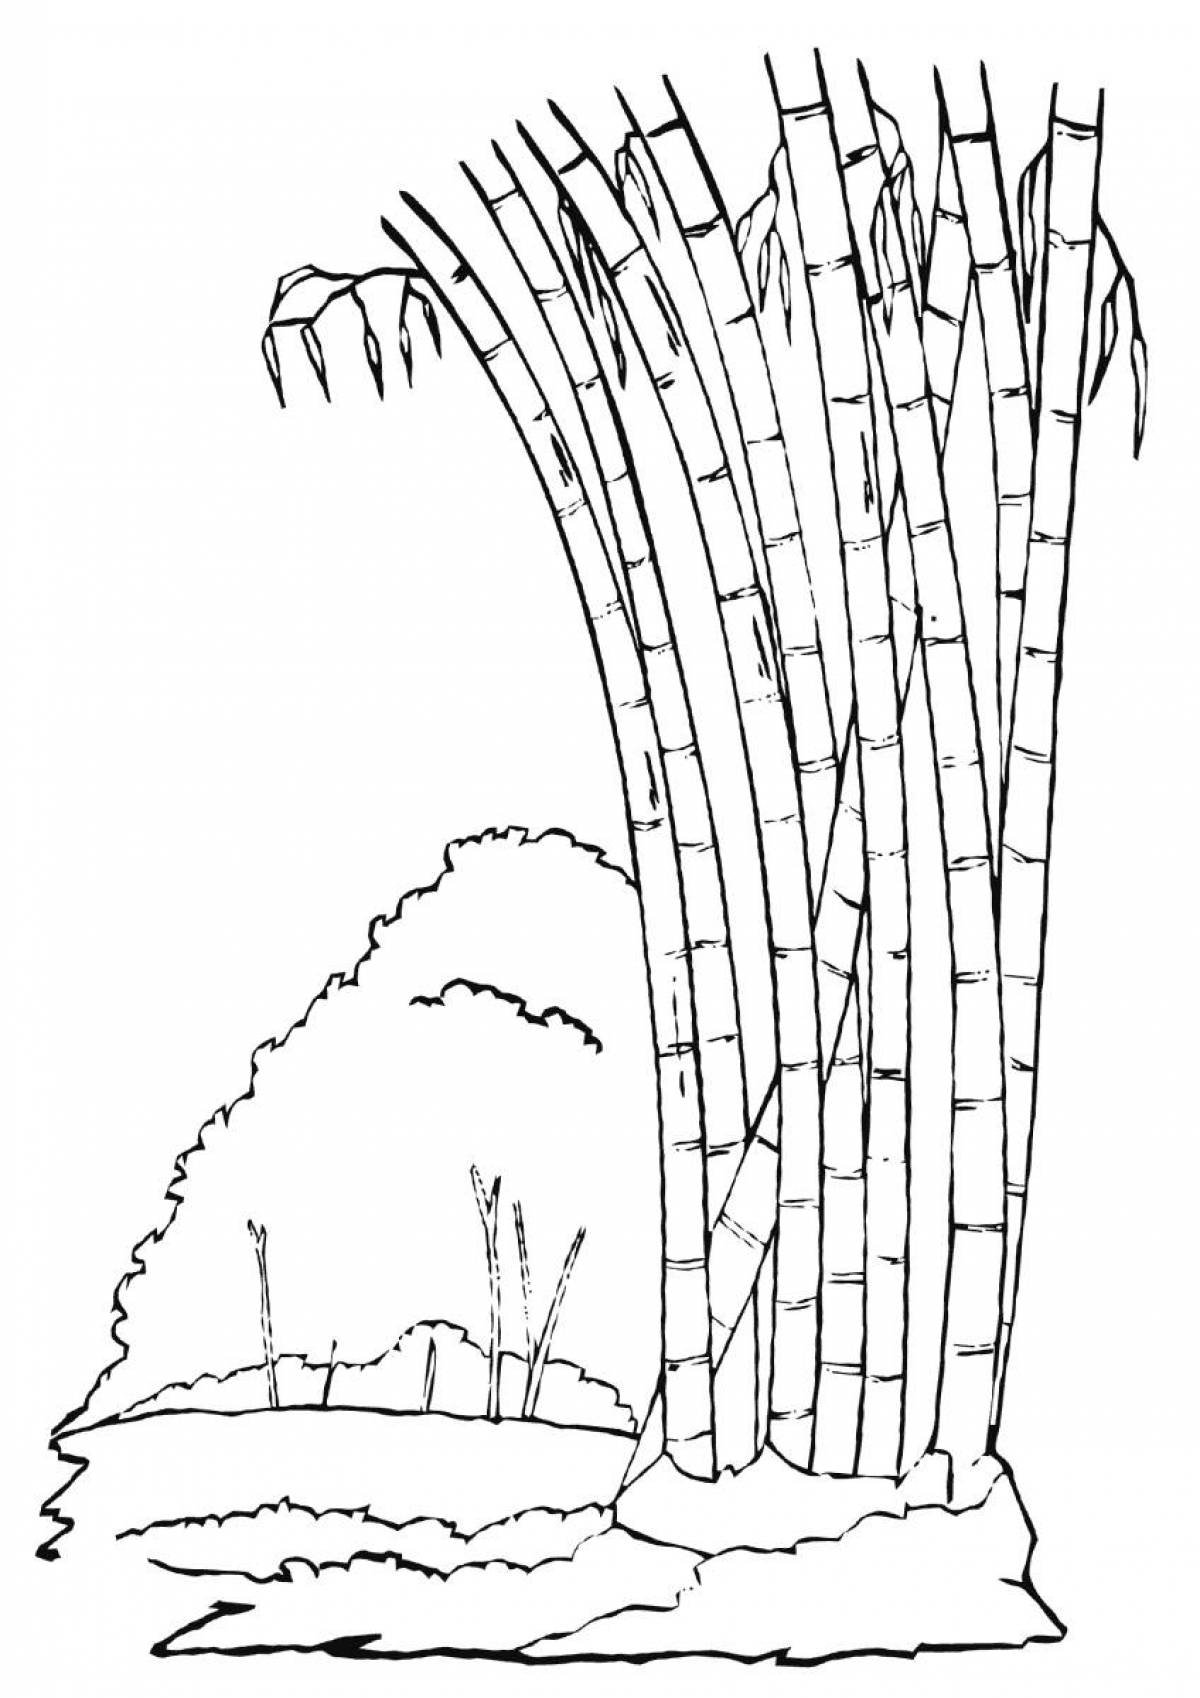 Drawing bamboo